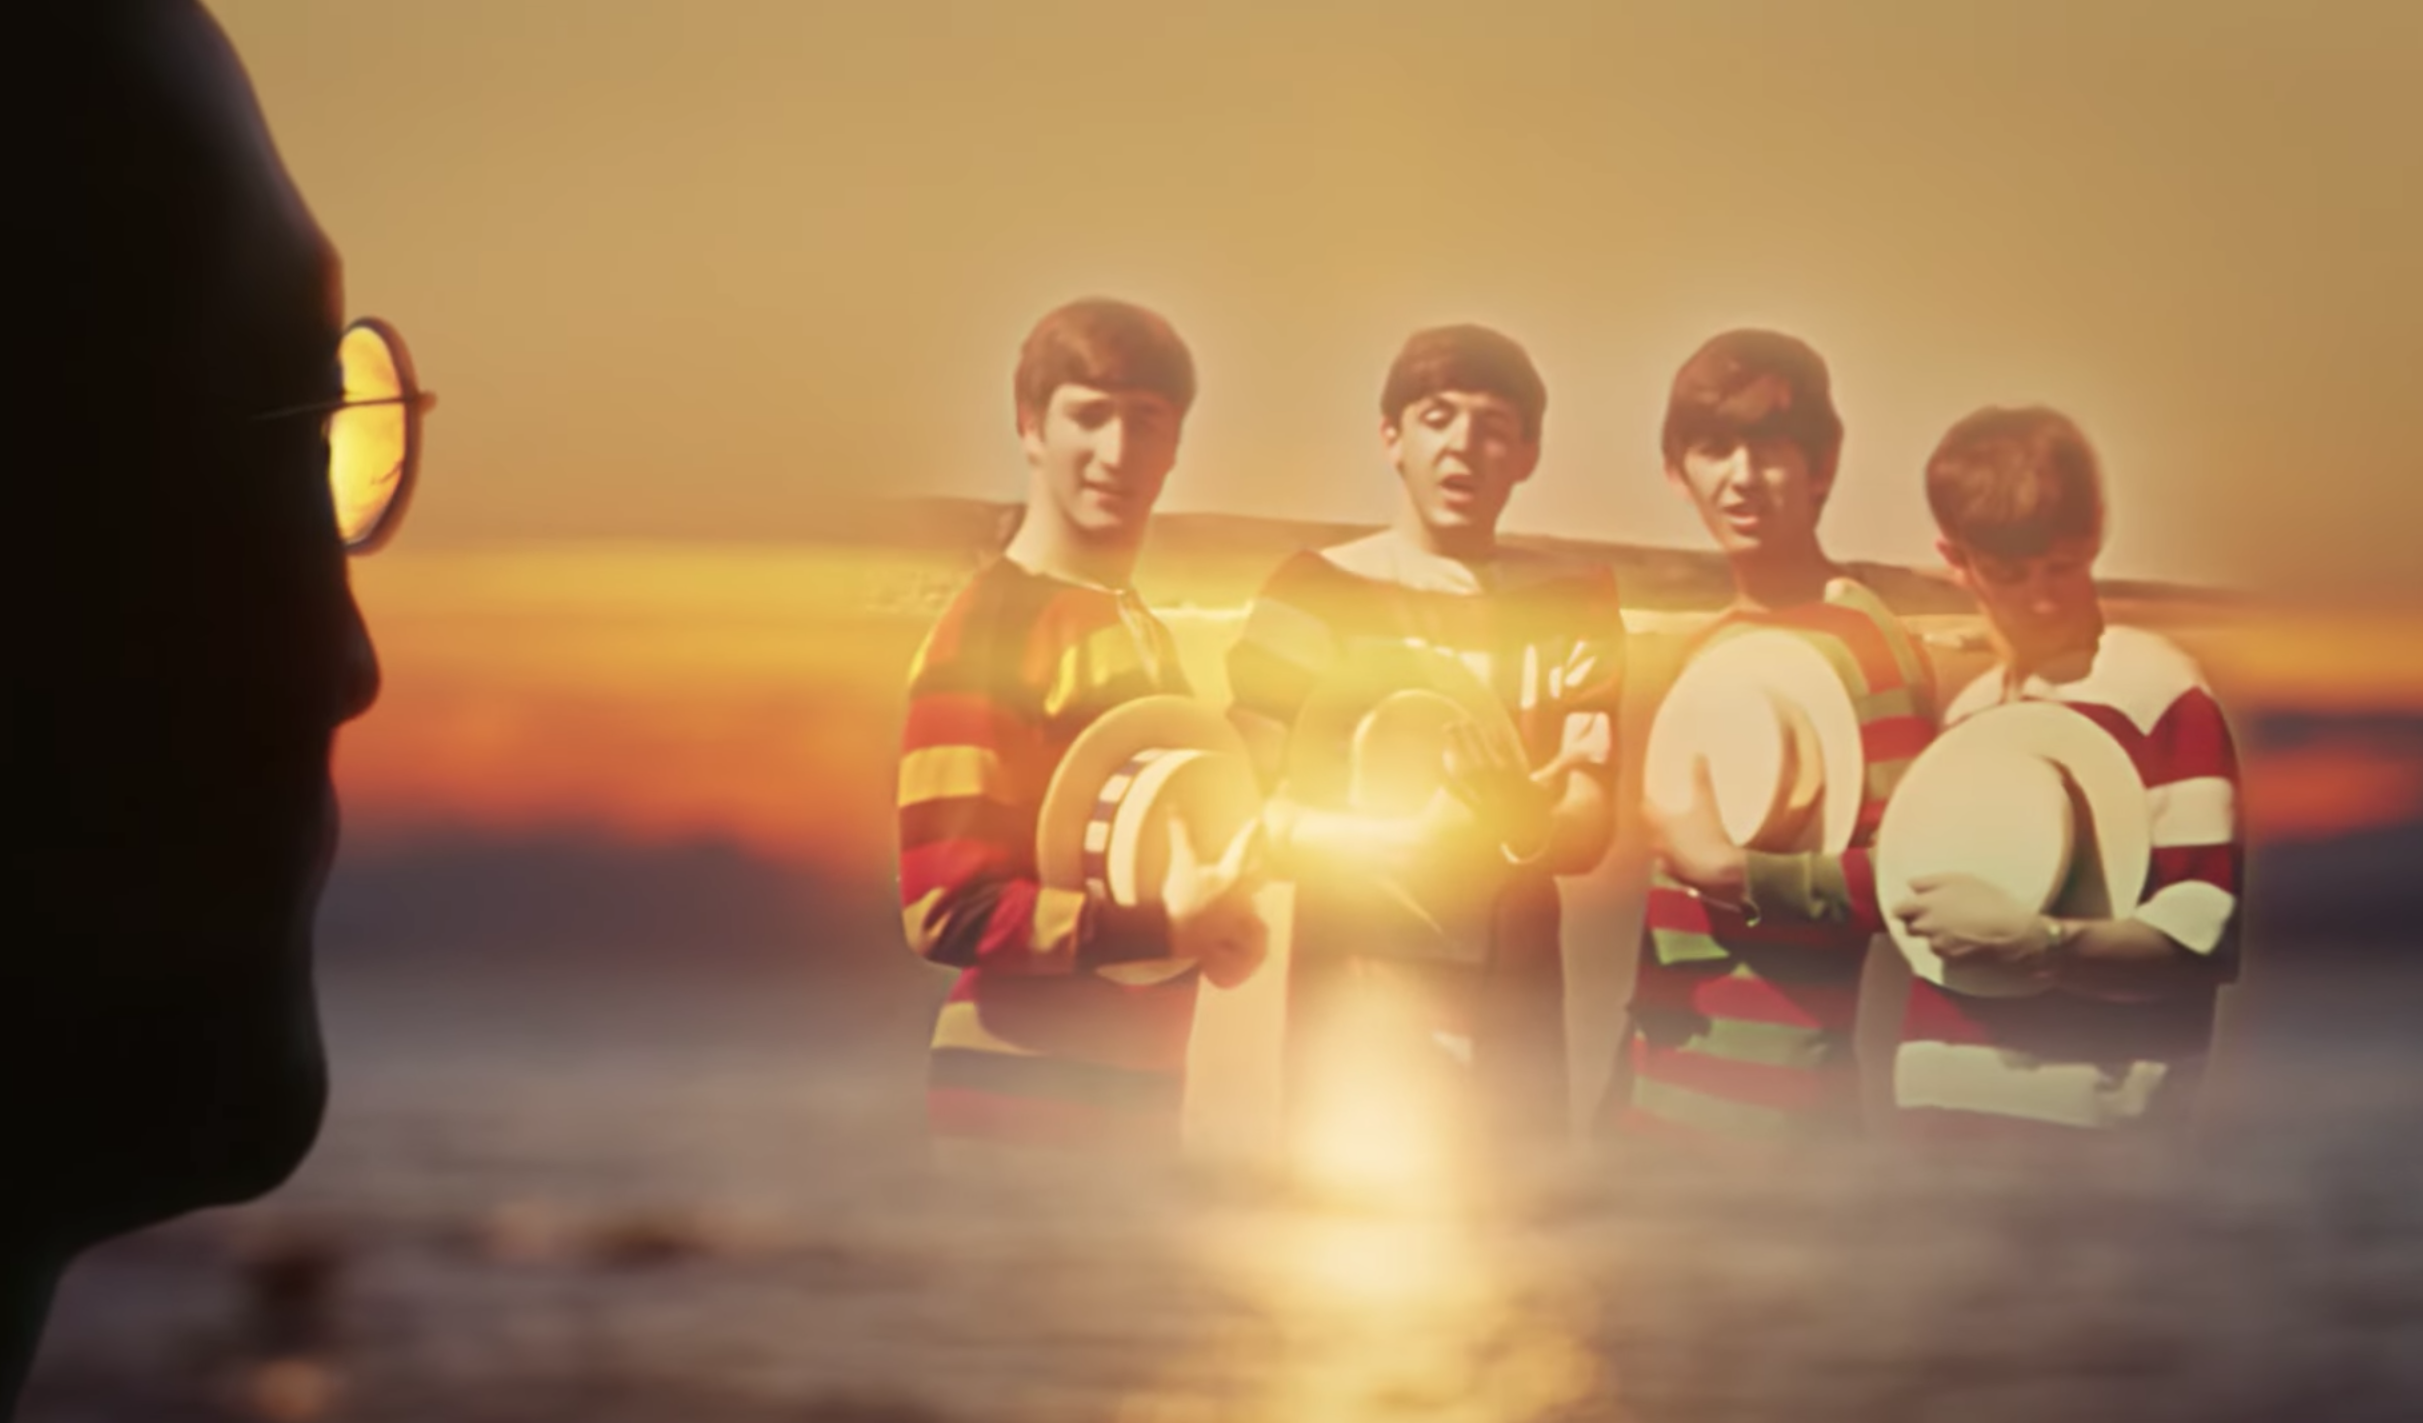 "Now and Then", la última canción de The Beatles surge gracias a la Inteligencia Artificial